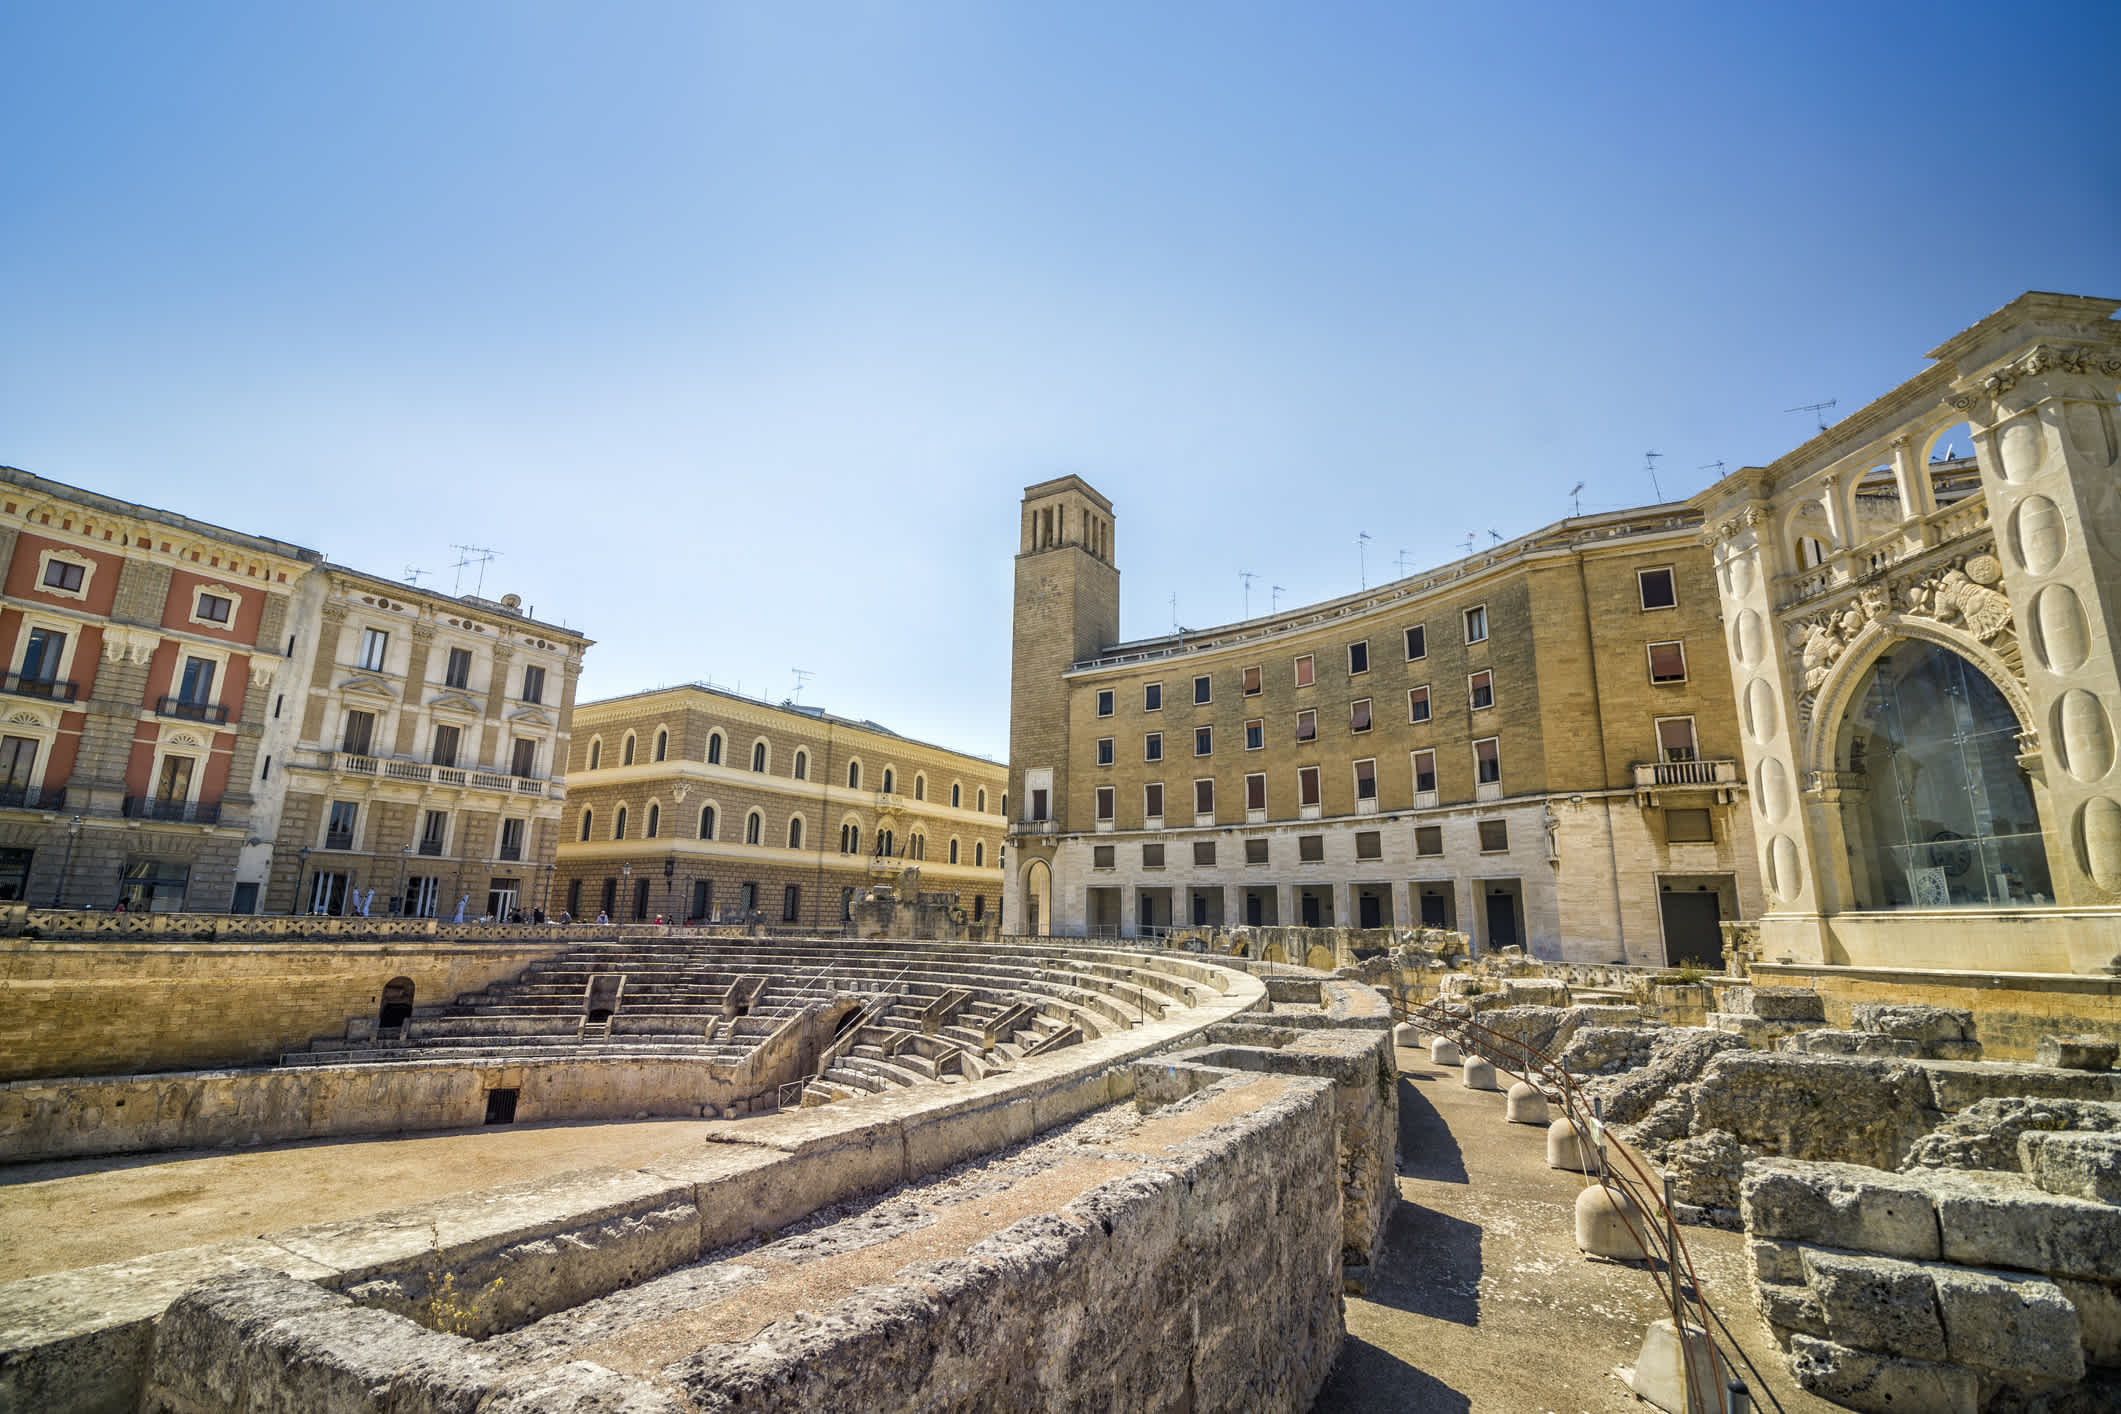 Vue sur une place en forme d'amphithéâtre de la ville baroque de Lecce, dans les Pouilles, en Italie.